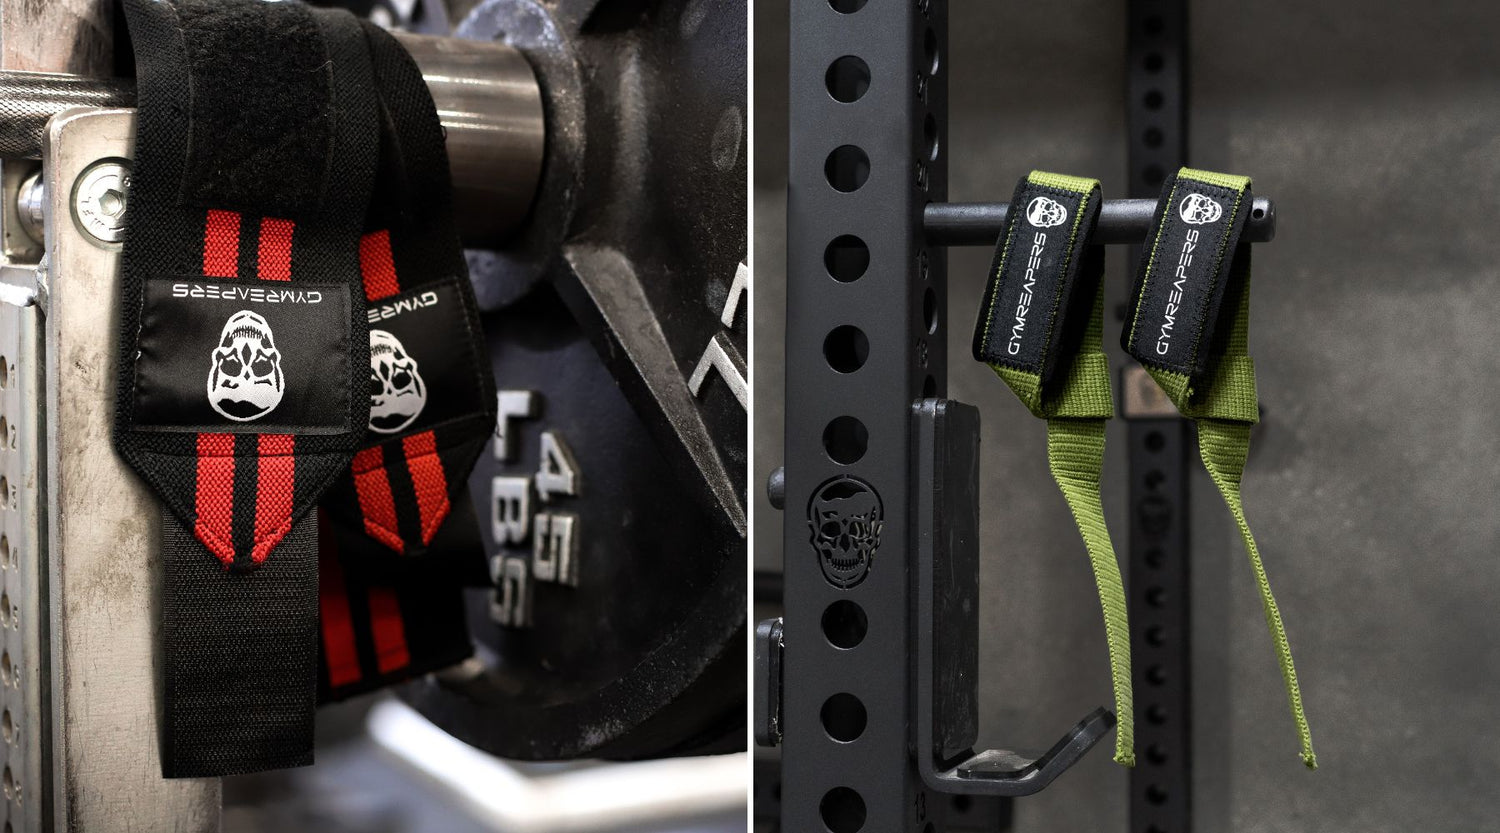 Phantom lifting straps for a secure grip - PHANTOM ATHLETICS